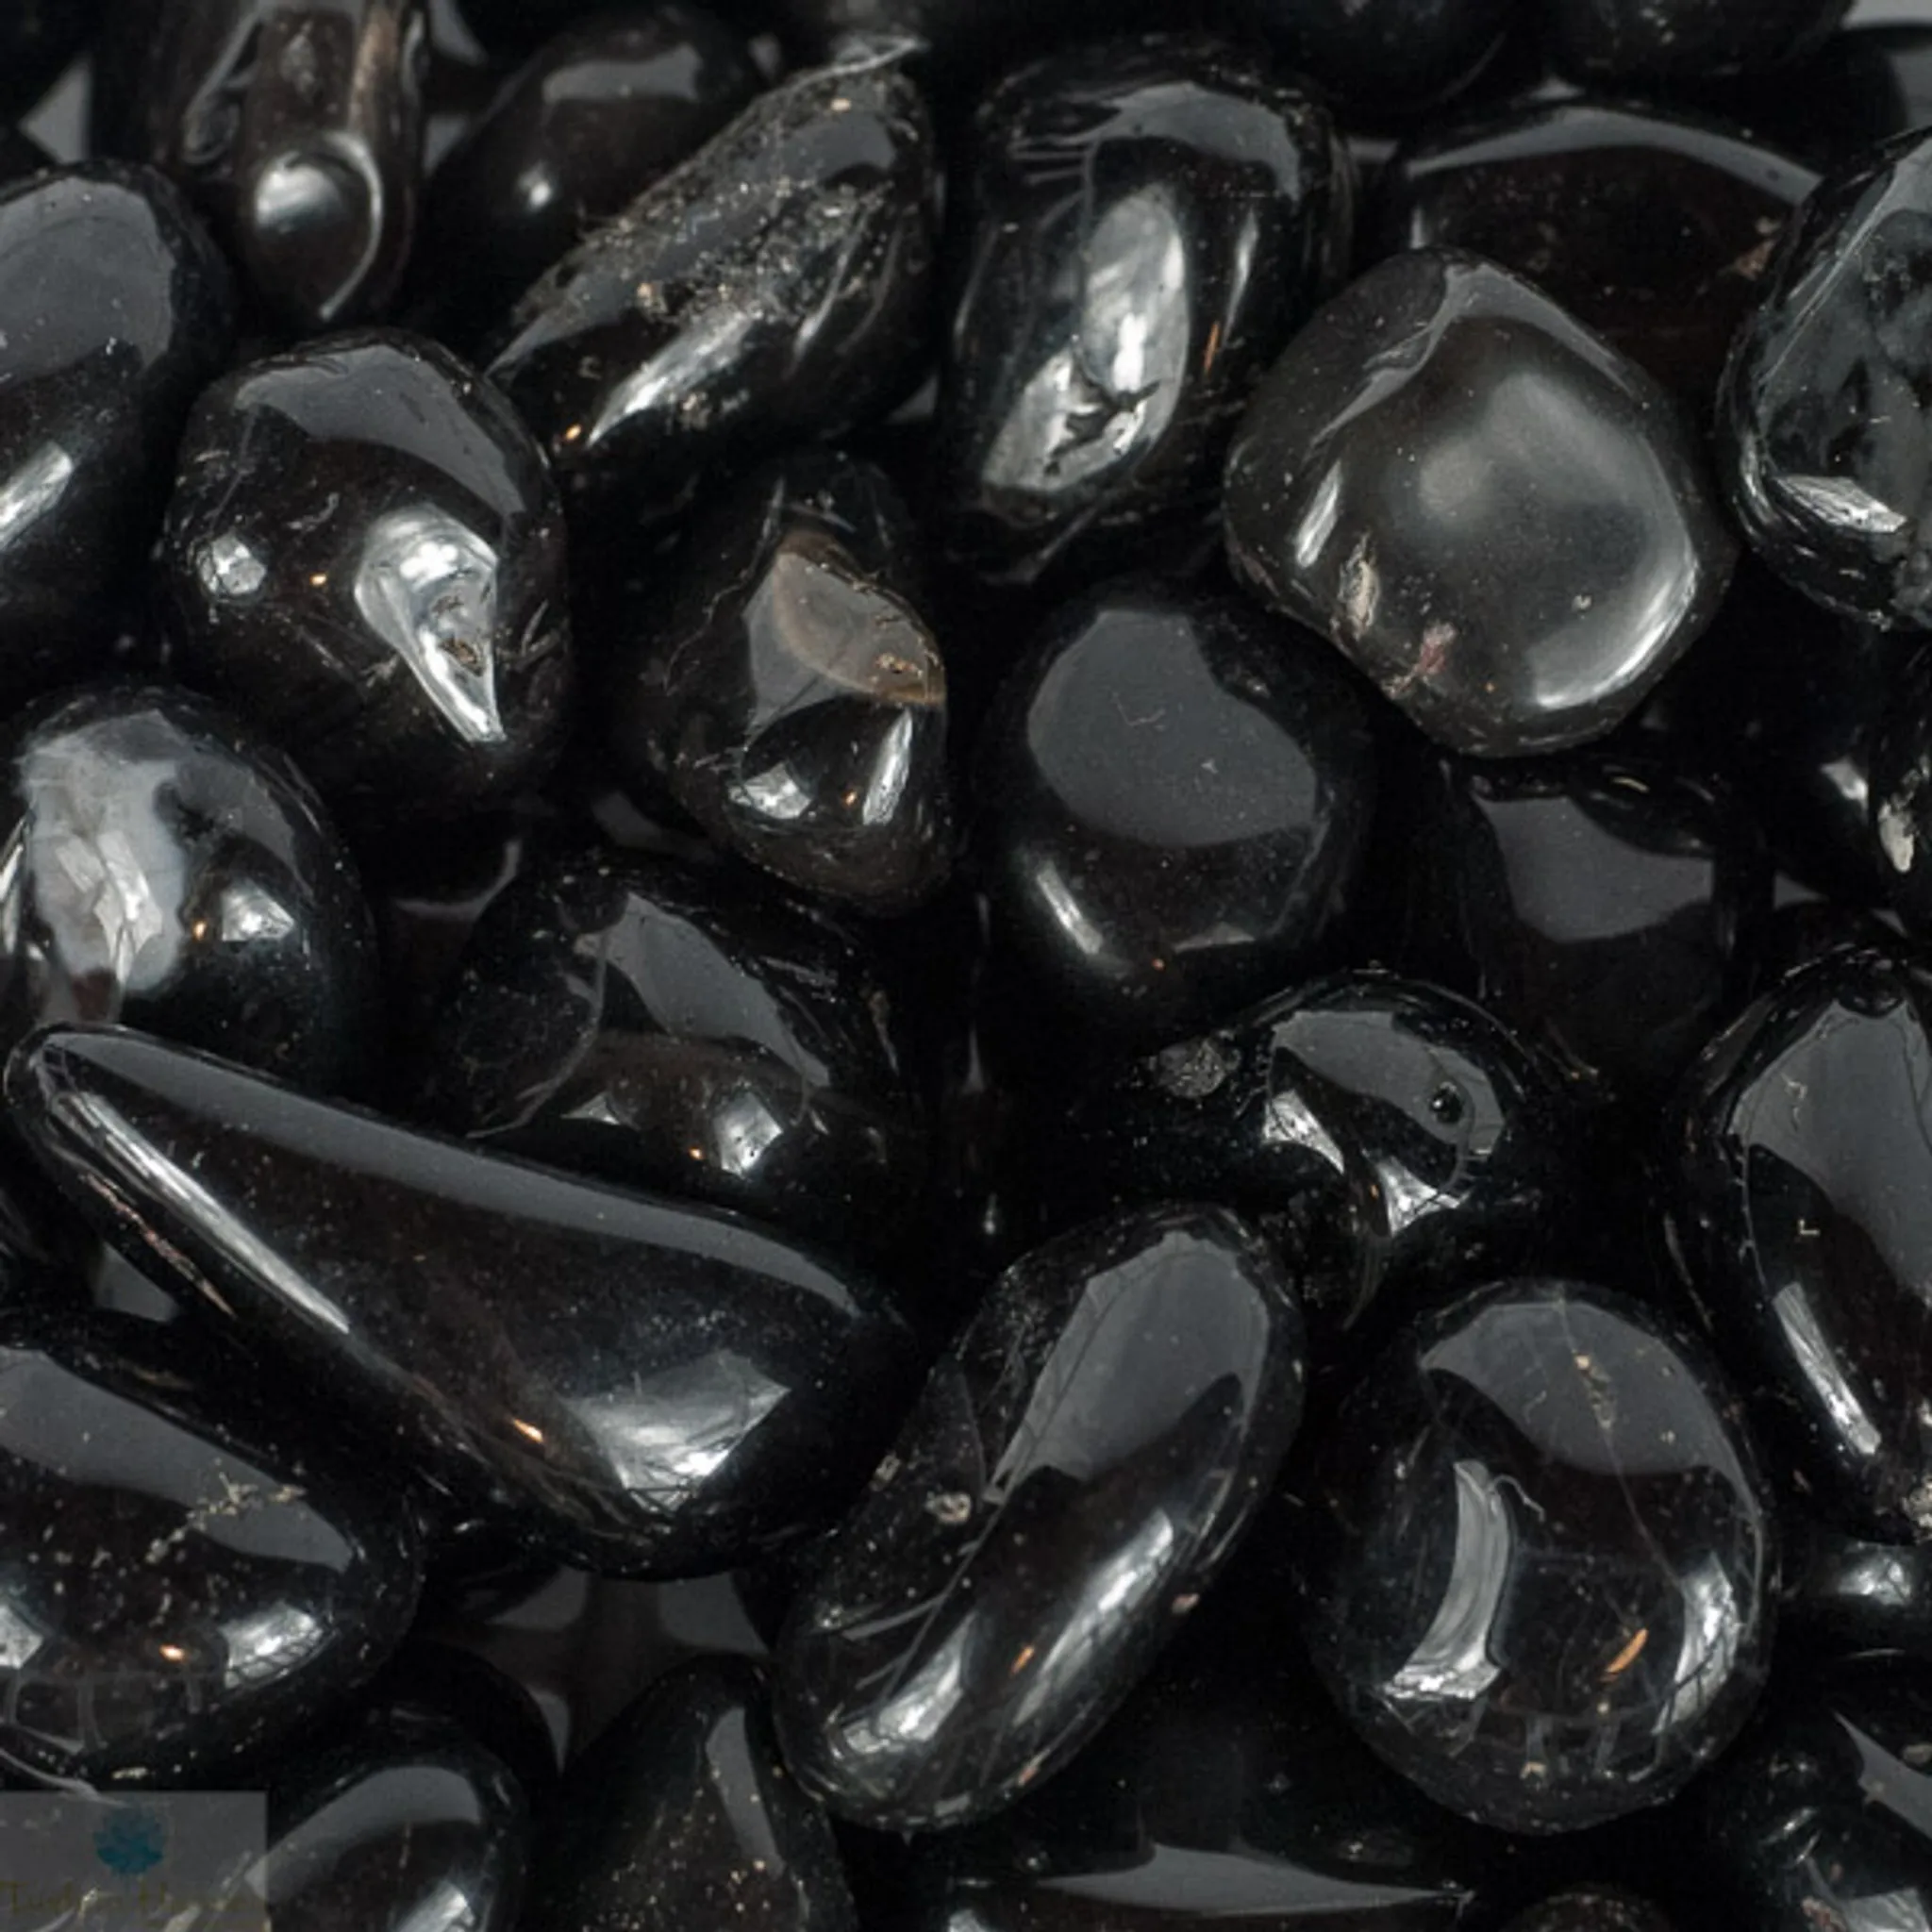 Crystal Kismet - Shiny Black Onyx Tumbled Stones Large